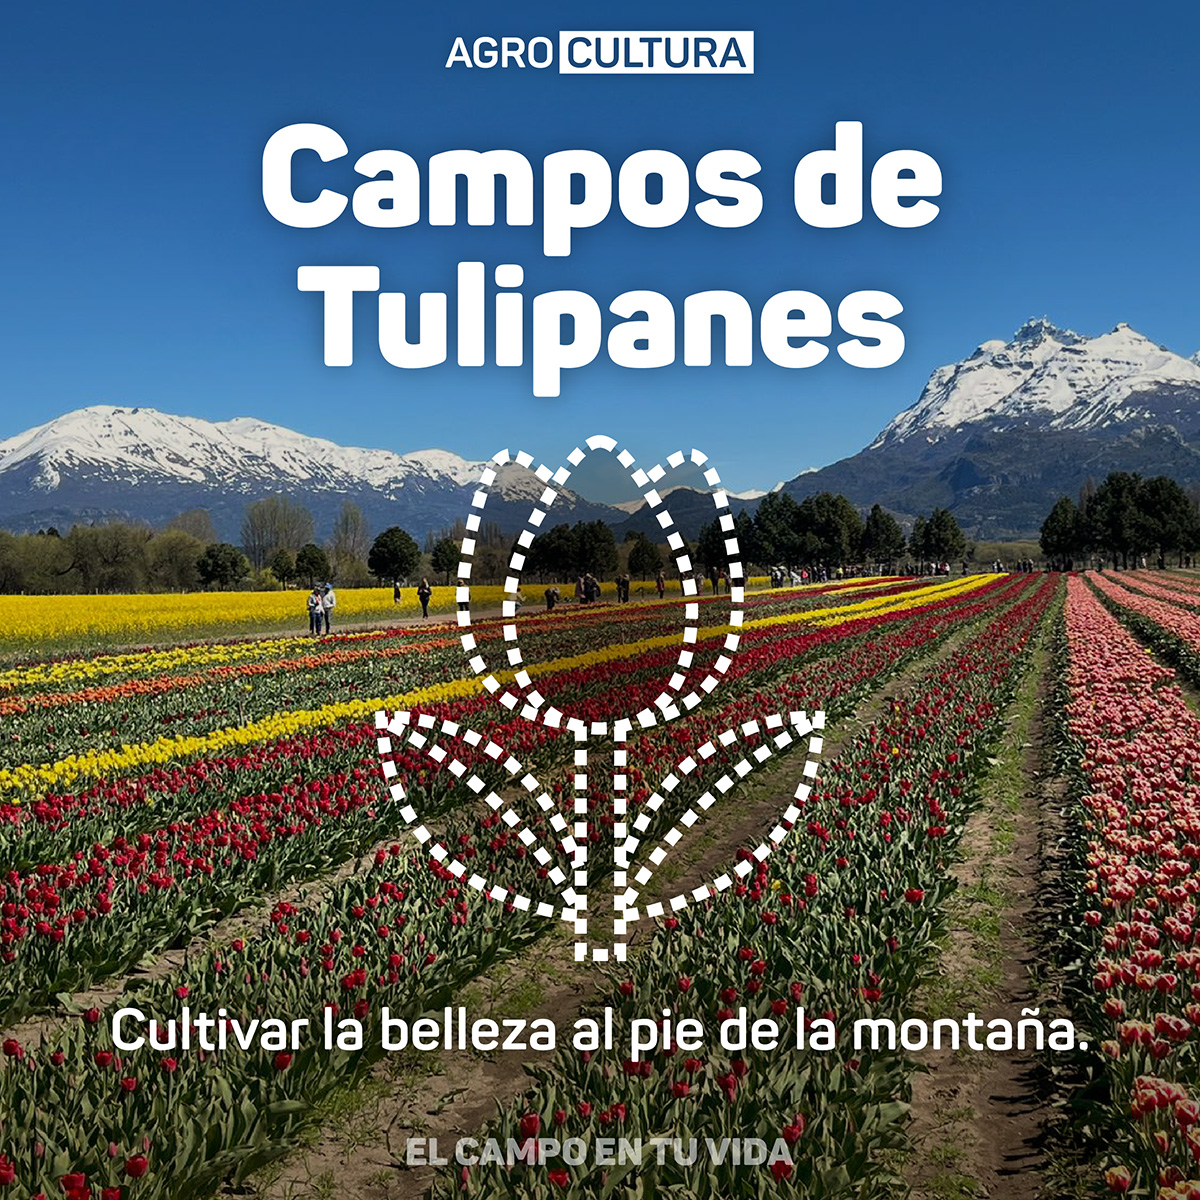 Campos-de-Tulipanes-cultivar-la-belleza-al-pie-de-la-montana